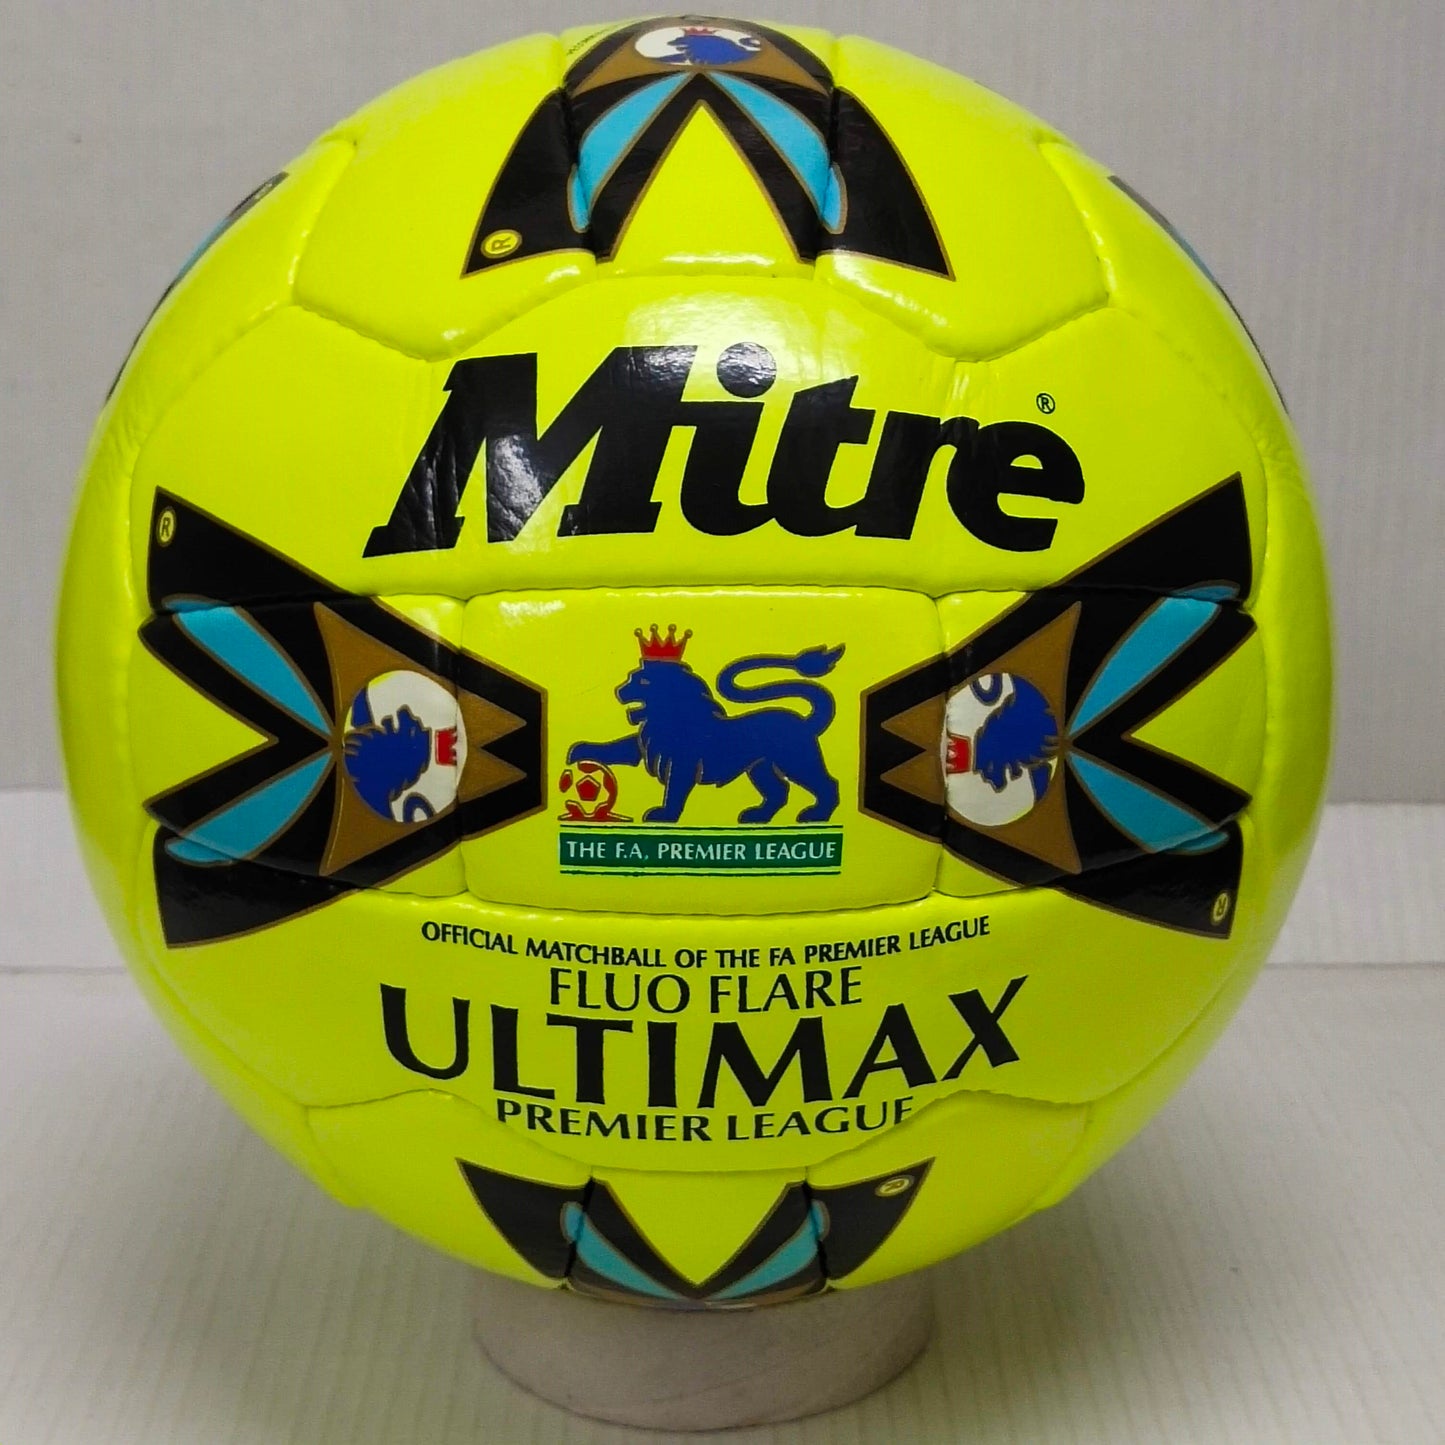 Mitre Ultimax The FA Premier League | Fluro Flare | OMB 1998 | Size 5 01